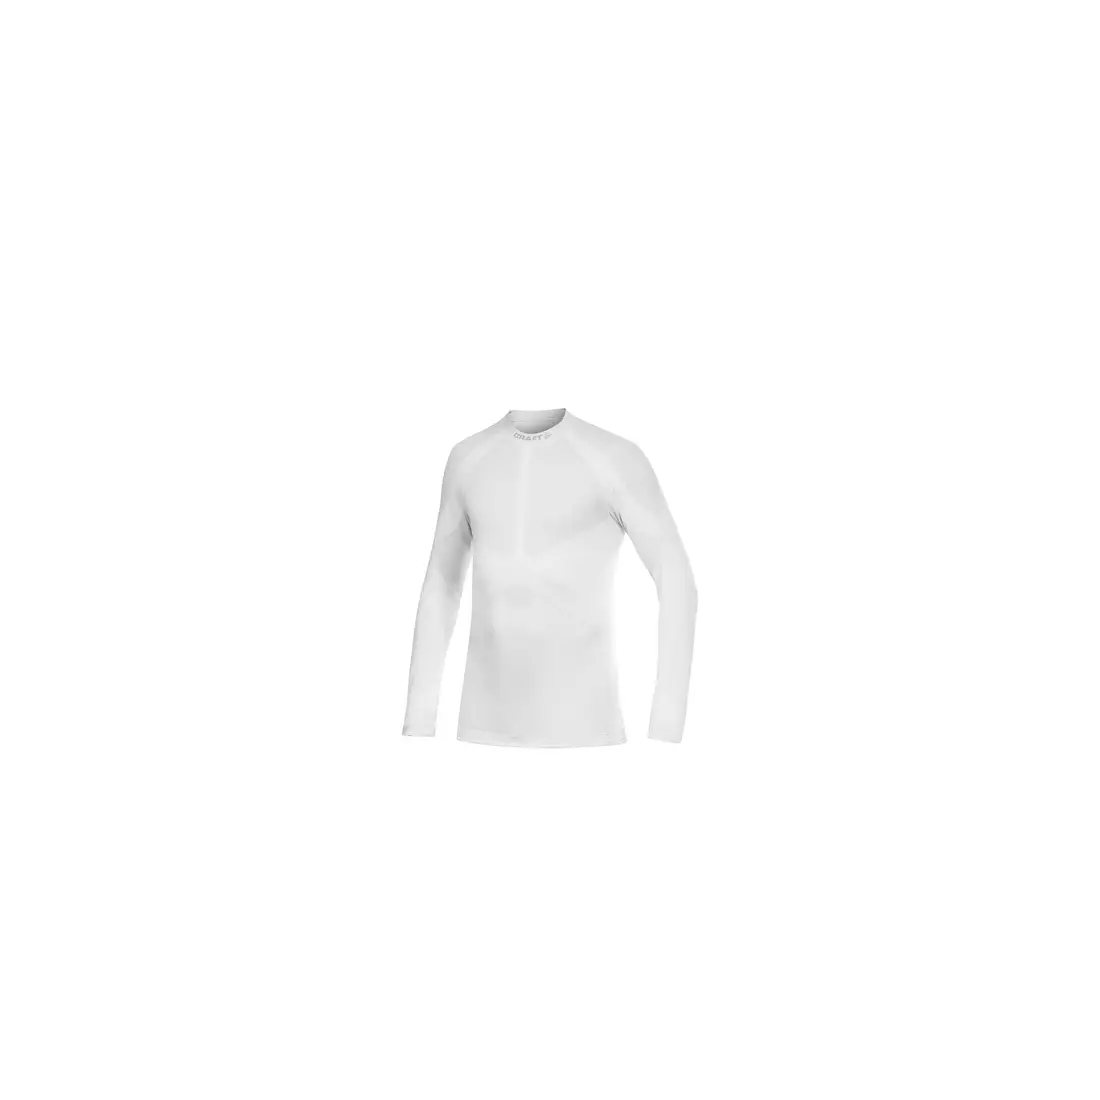 CRAFT WARM - termo fehérnemű - 1901637-2900 - férfi póló